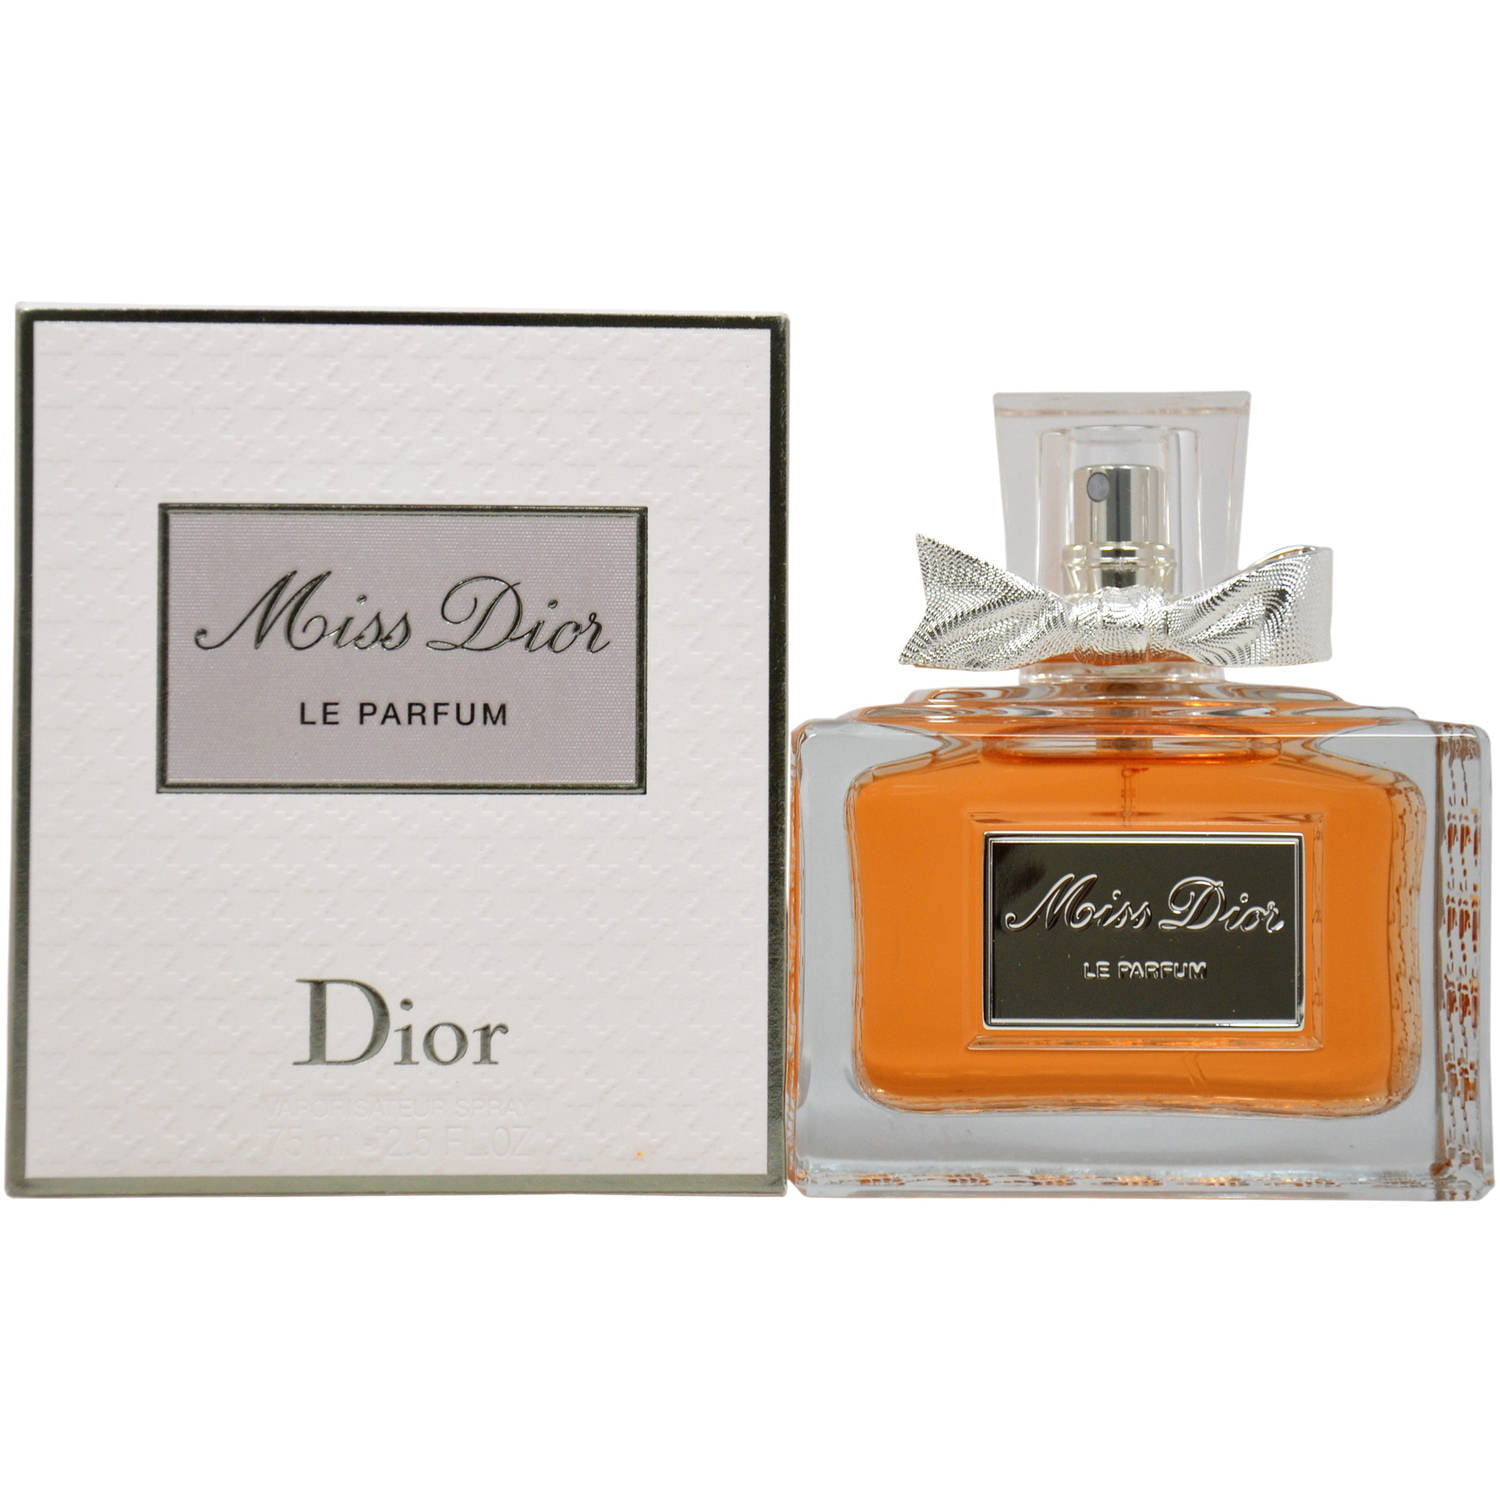 Le Parfumier - Christian Dior Miss Dior For Women Eau de Parfum